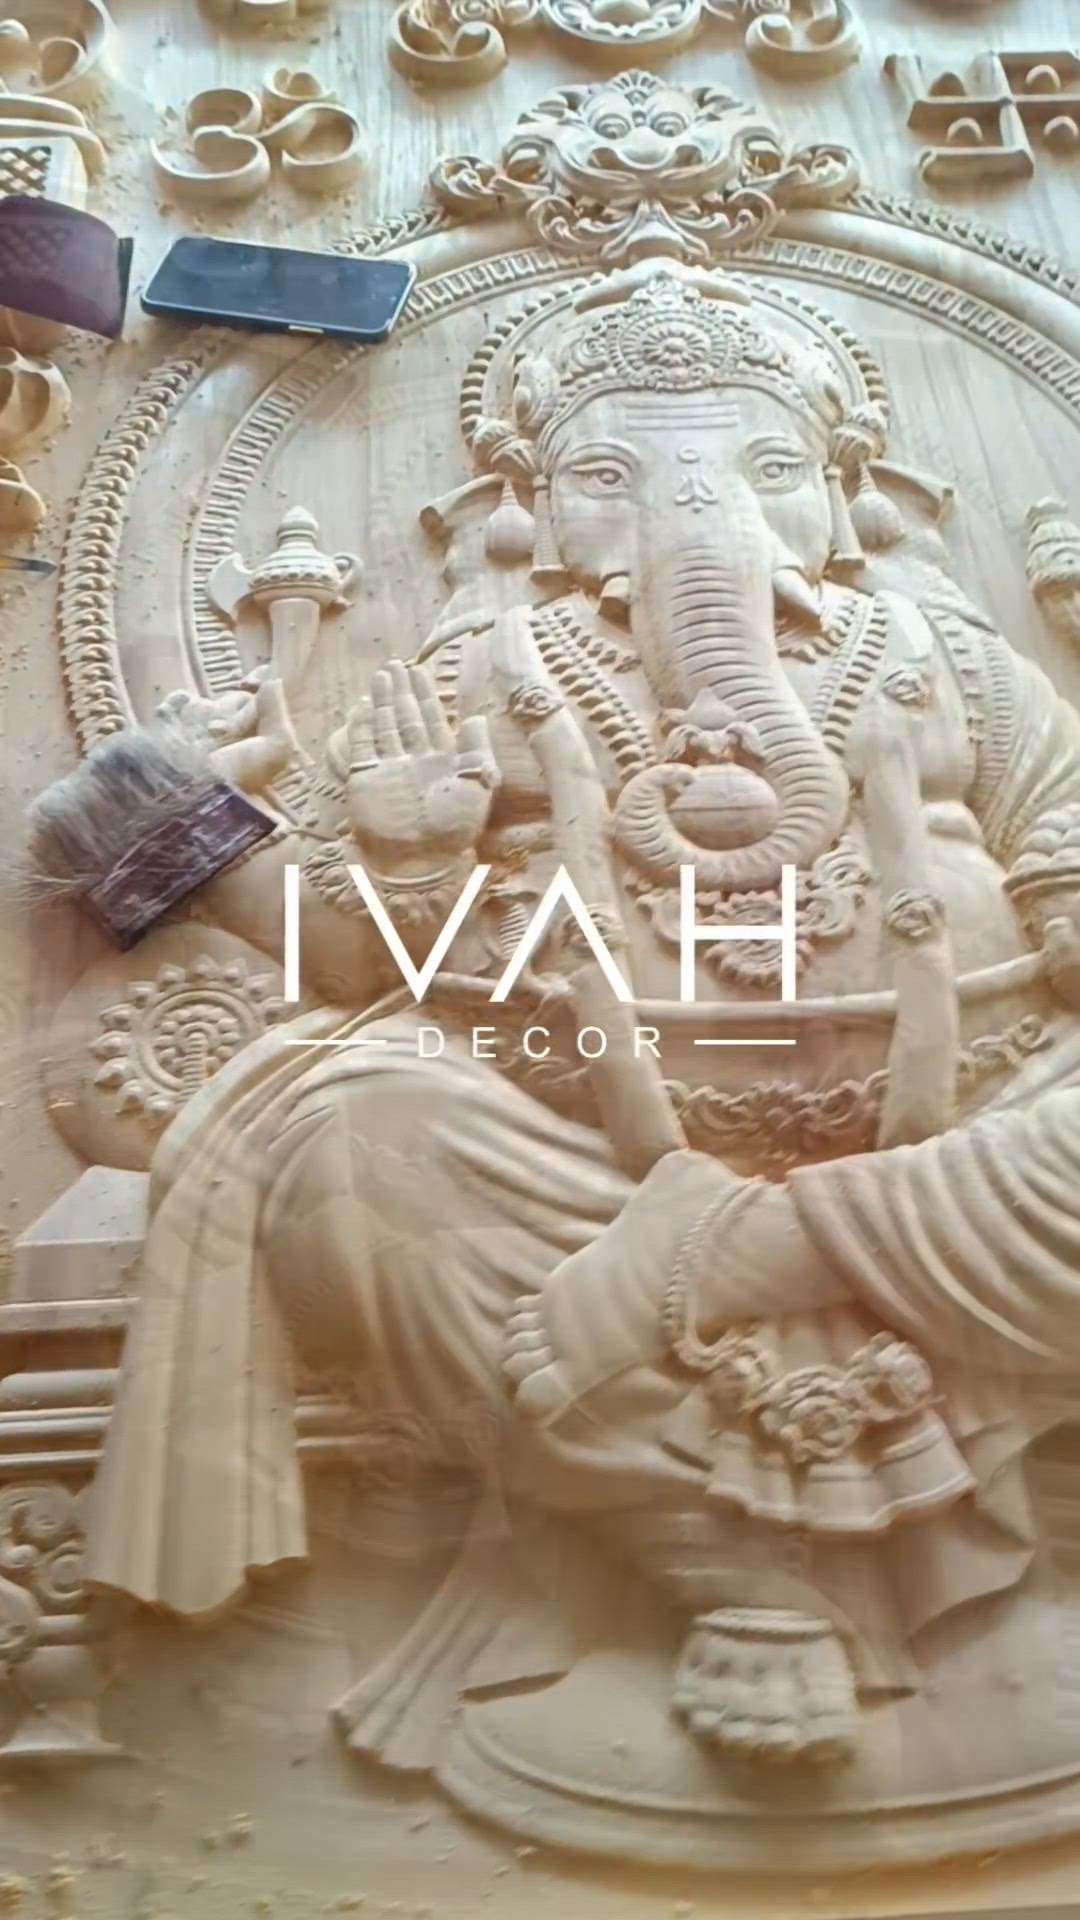 Wood carving Lord Ganesha in Jack wood 150cm x 105cm in Jack wood

#IVAH #ivahdecor #woodcarving #woodenwallart #ganapati #lordganesha #poojadecor #poojaroom #poojaroomdecor #prayerroom #temple #poojadoor #premiumproducts #gift #giftideas